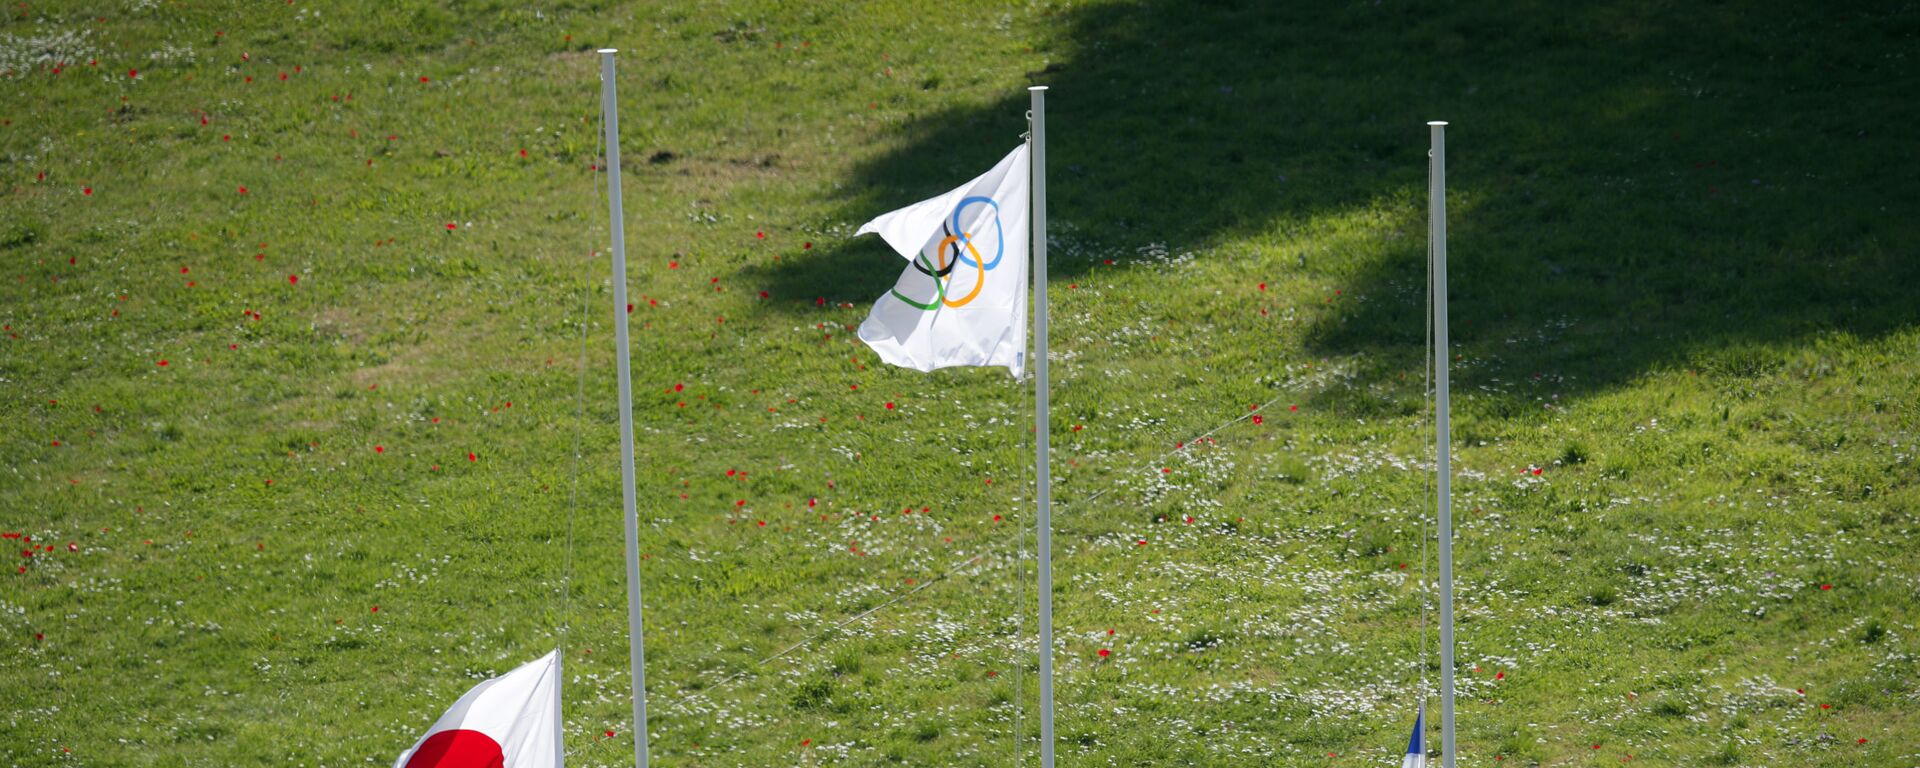 Поднятие флагов на репетиции церемонии зажжения Олимпийского огня для Токио-2020 - Sputnik Latvija, 1920, 21.03.2021